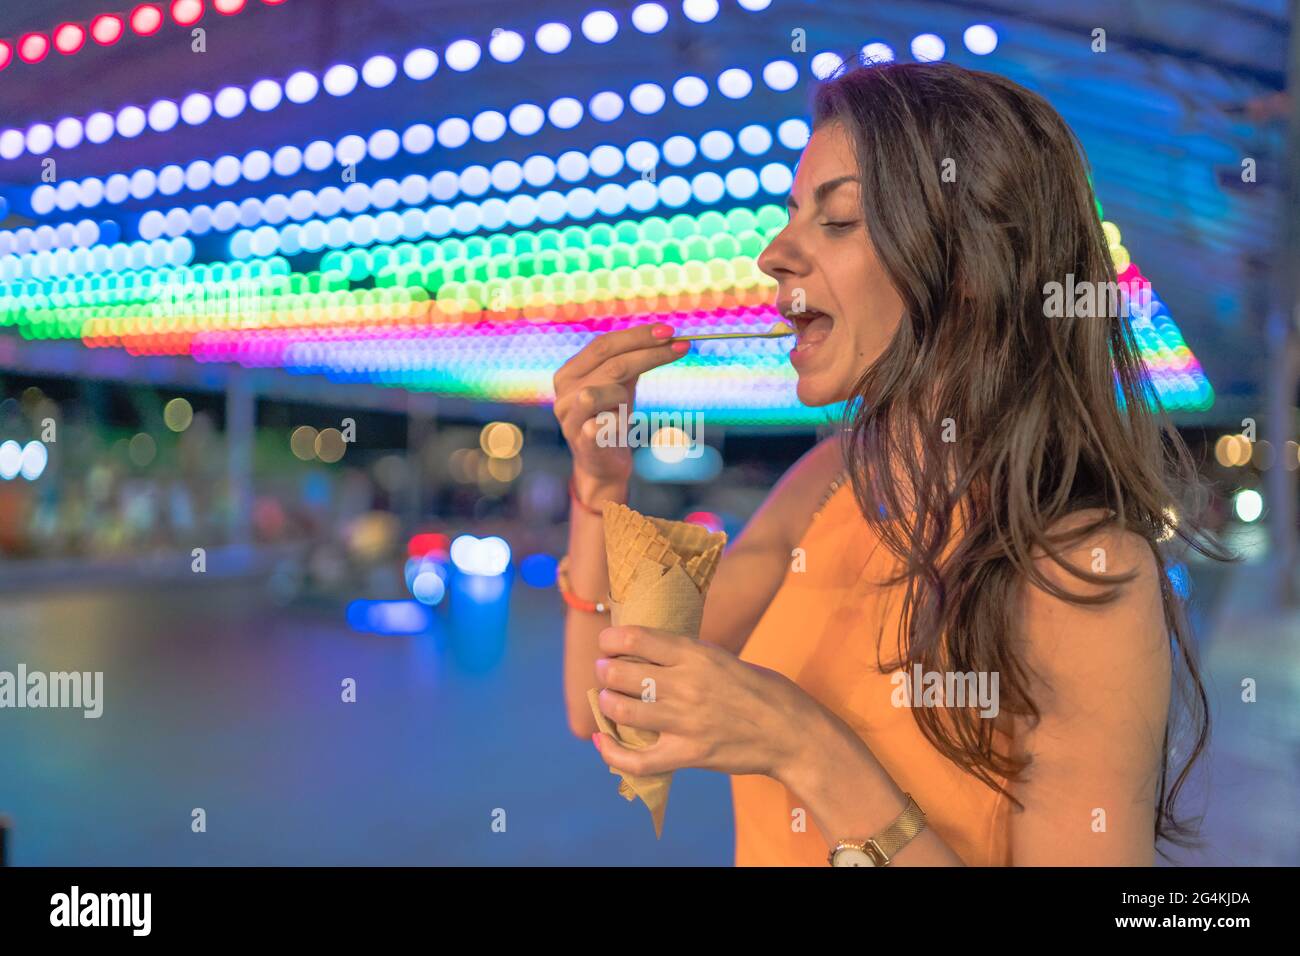 Colpo vicino di giovane donna spensierata felice che prende un morso del gelato con gli occhi chiusi contro le luci colorate del carnevale offuscate Foto Stock